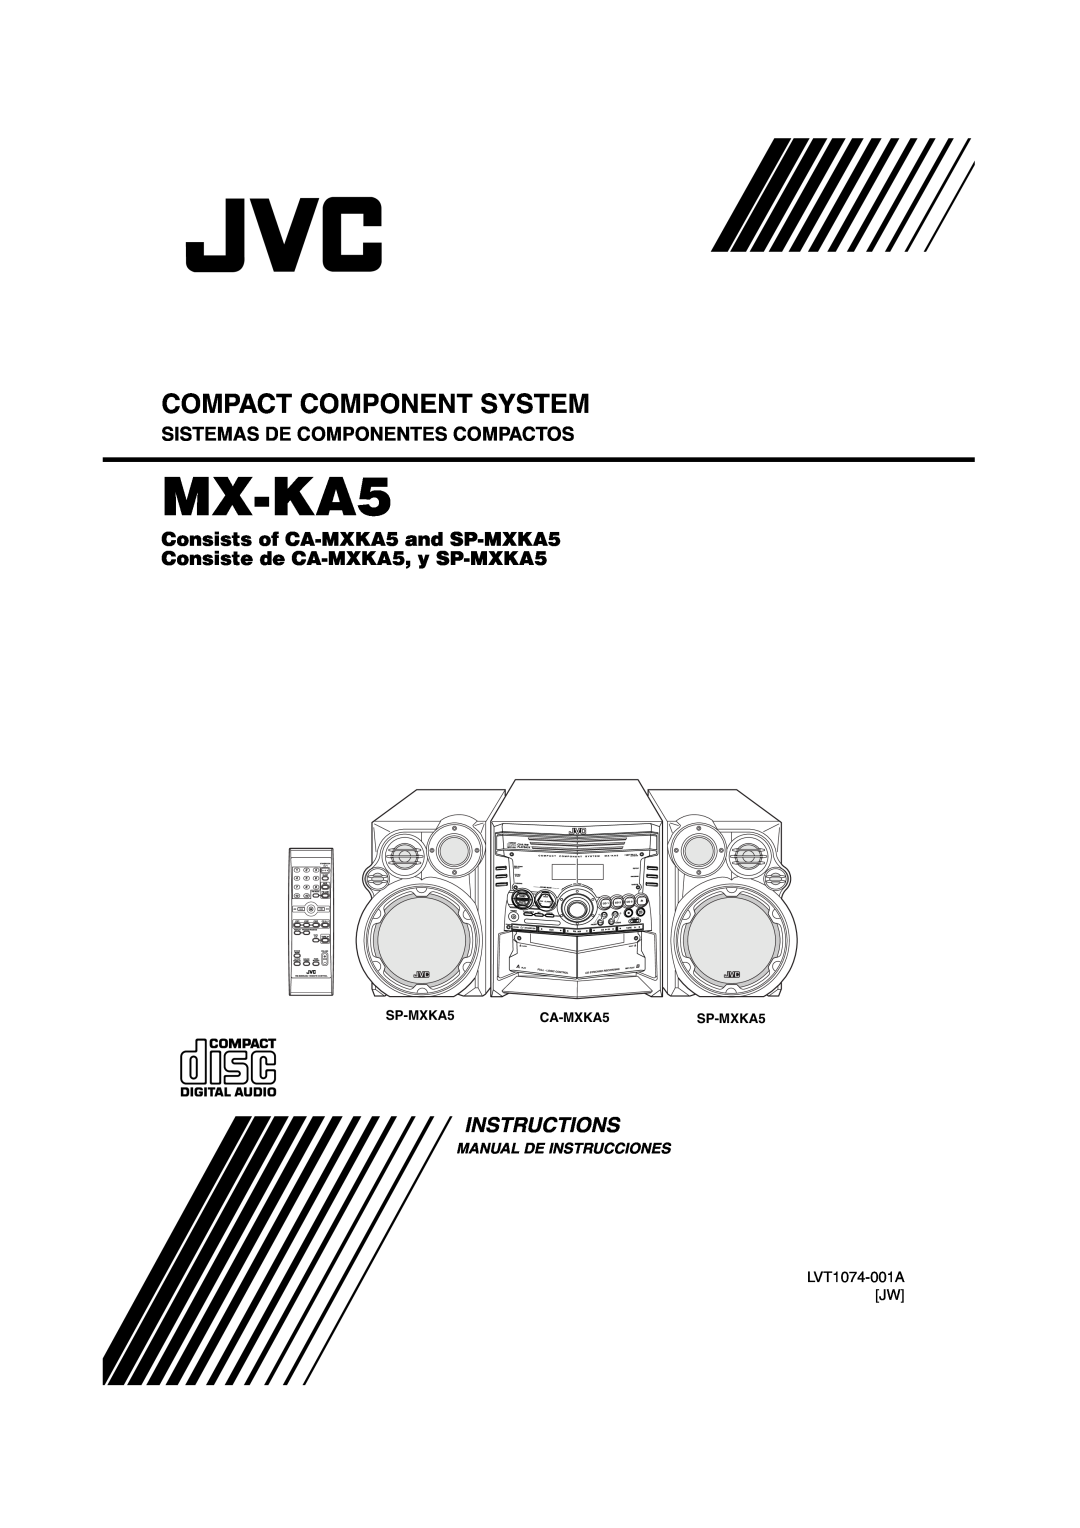 JVC MX-KA5JW manual Instructions, Compact Component System, Sistemas De Componentes Compactos, Manual De Instrucciones 